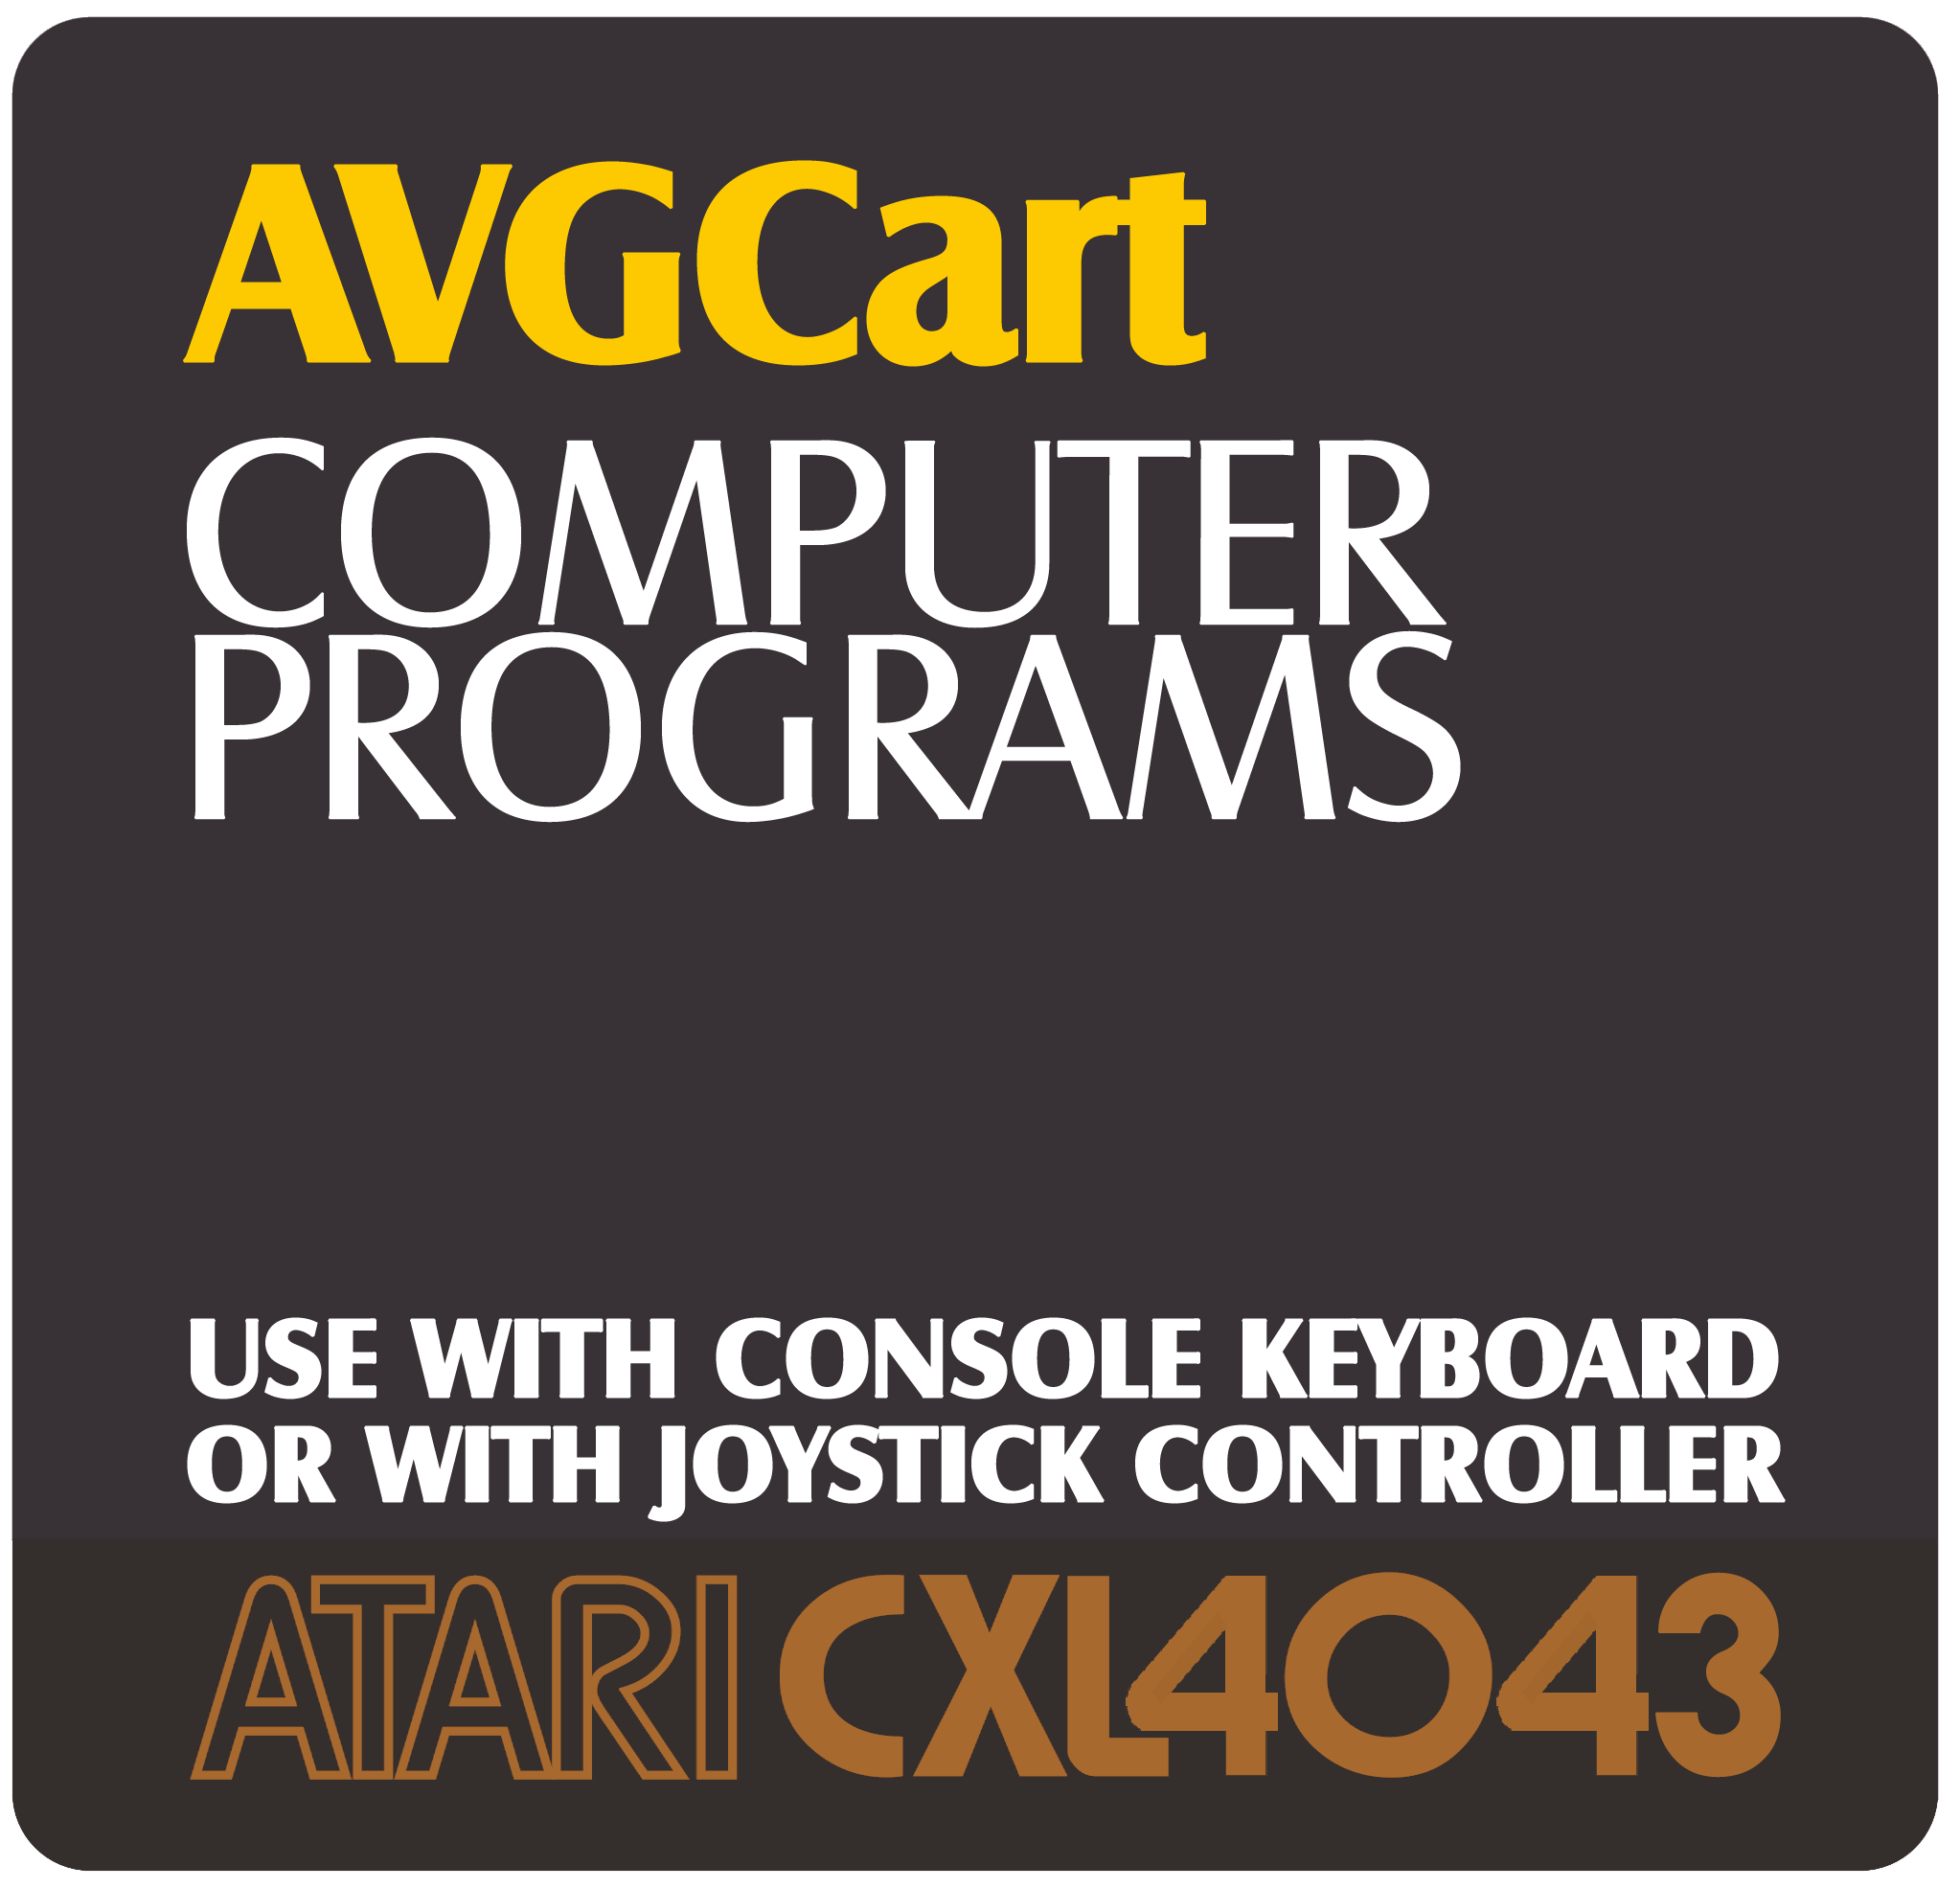 AVGCart_computerPrograms.png